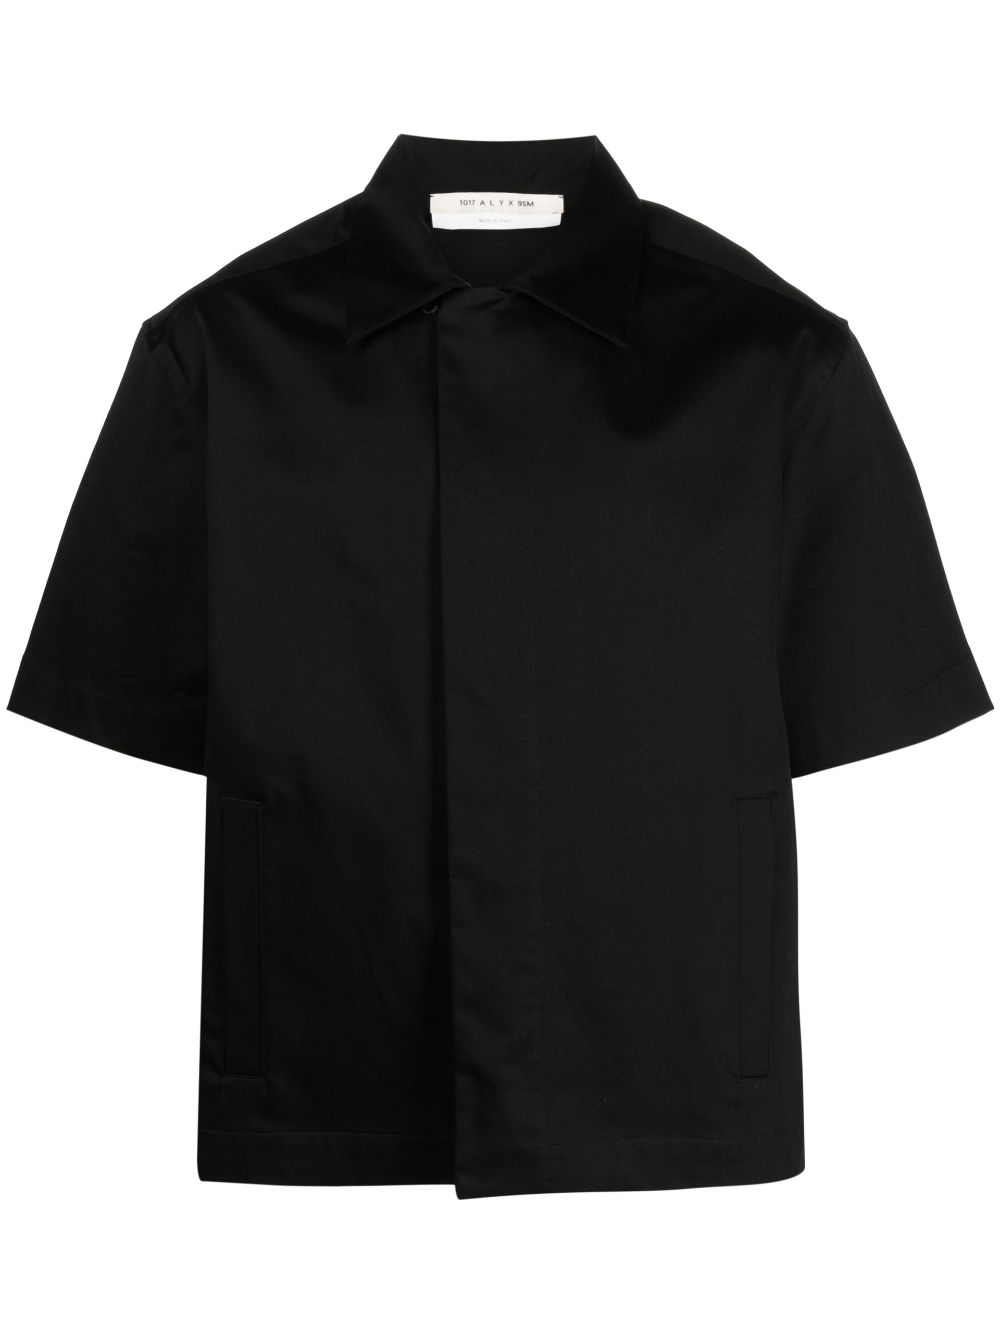 1017 ALYX 9SM concealed-front fastening shirt - Black von 1017 ALYX 9SM